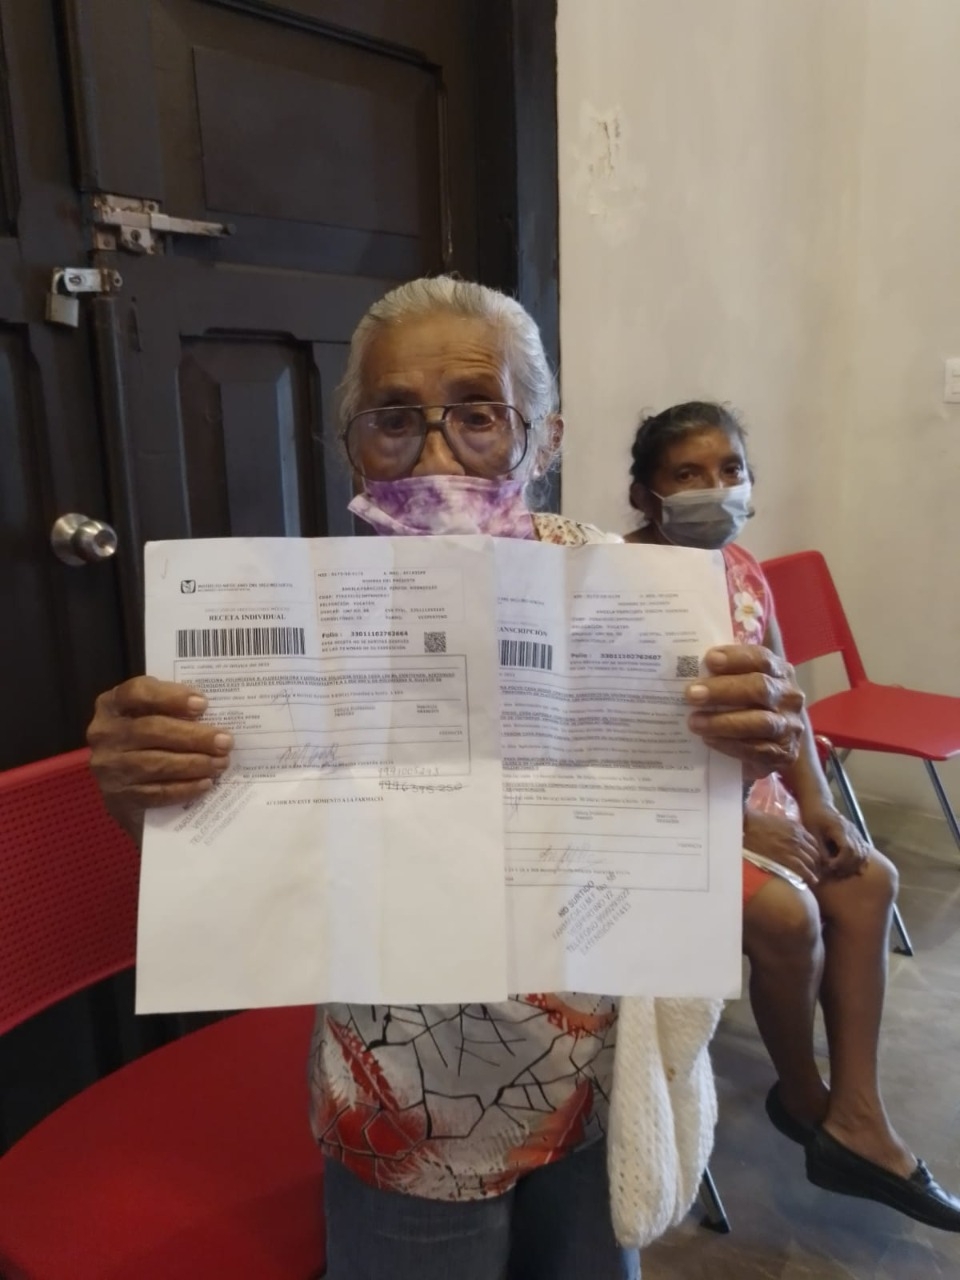 Ángela Pinzón de 83 años solicita apoyo para conseguir sus medicamentos